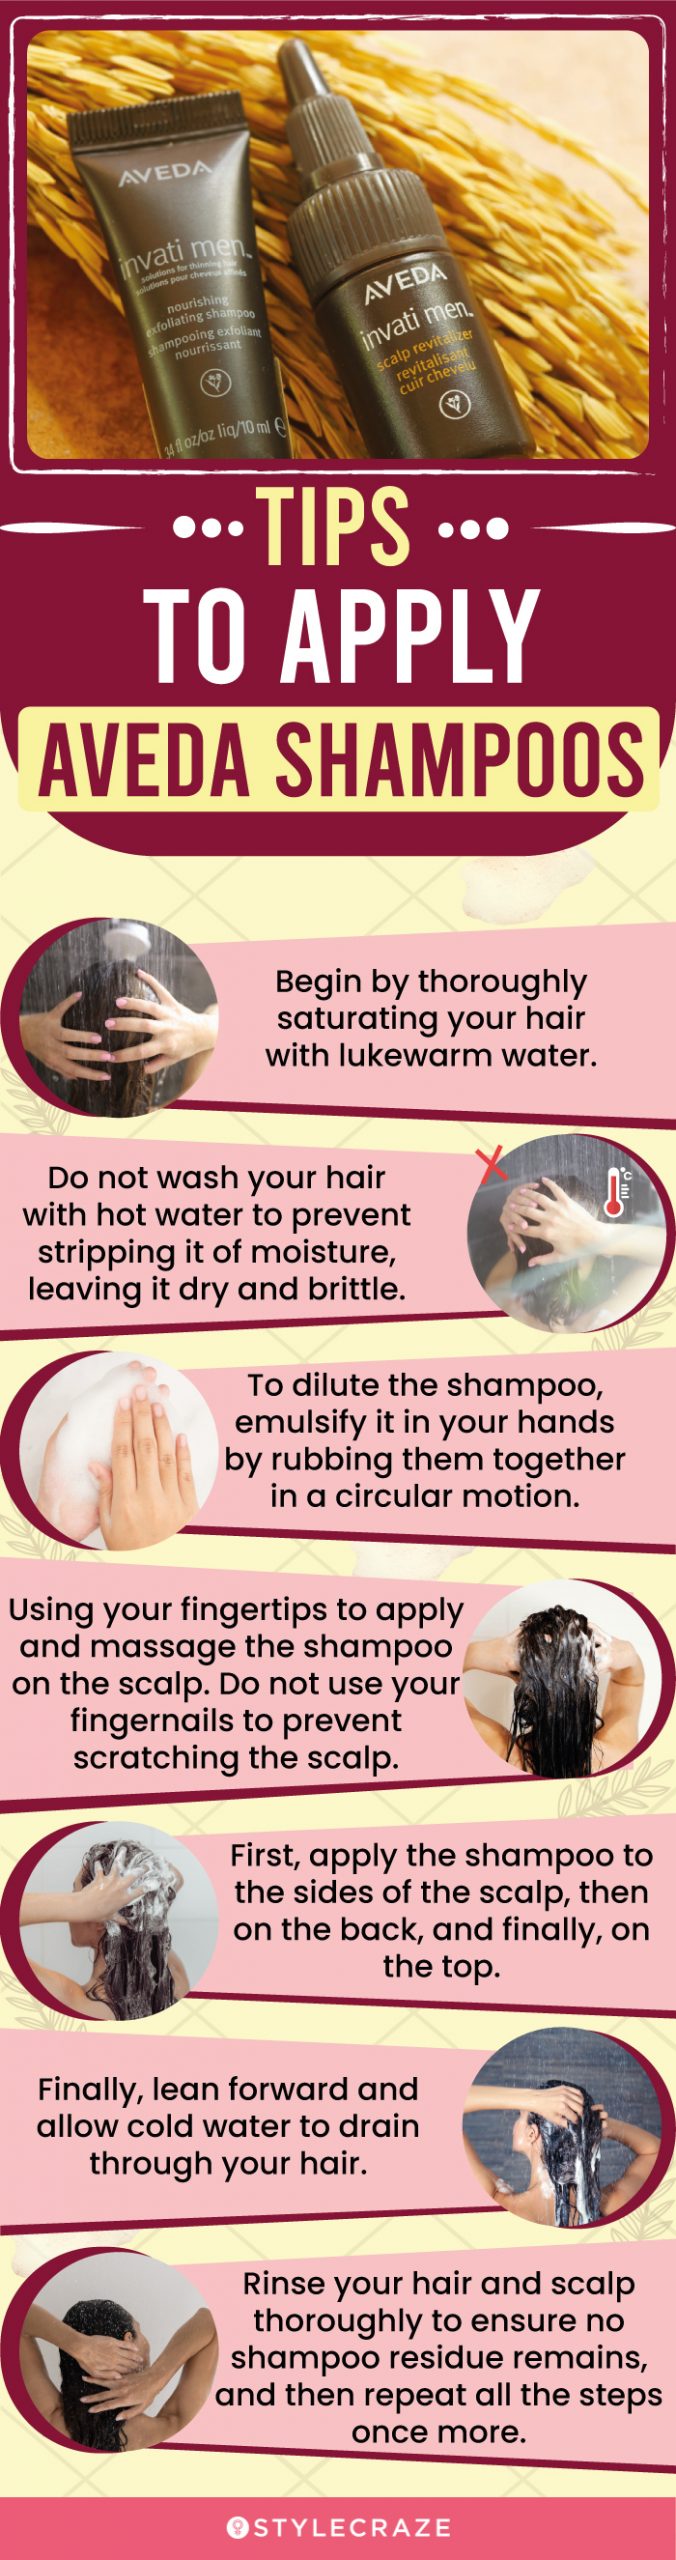 Tips To Apply Aveda Shampoo